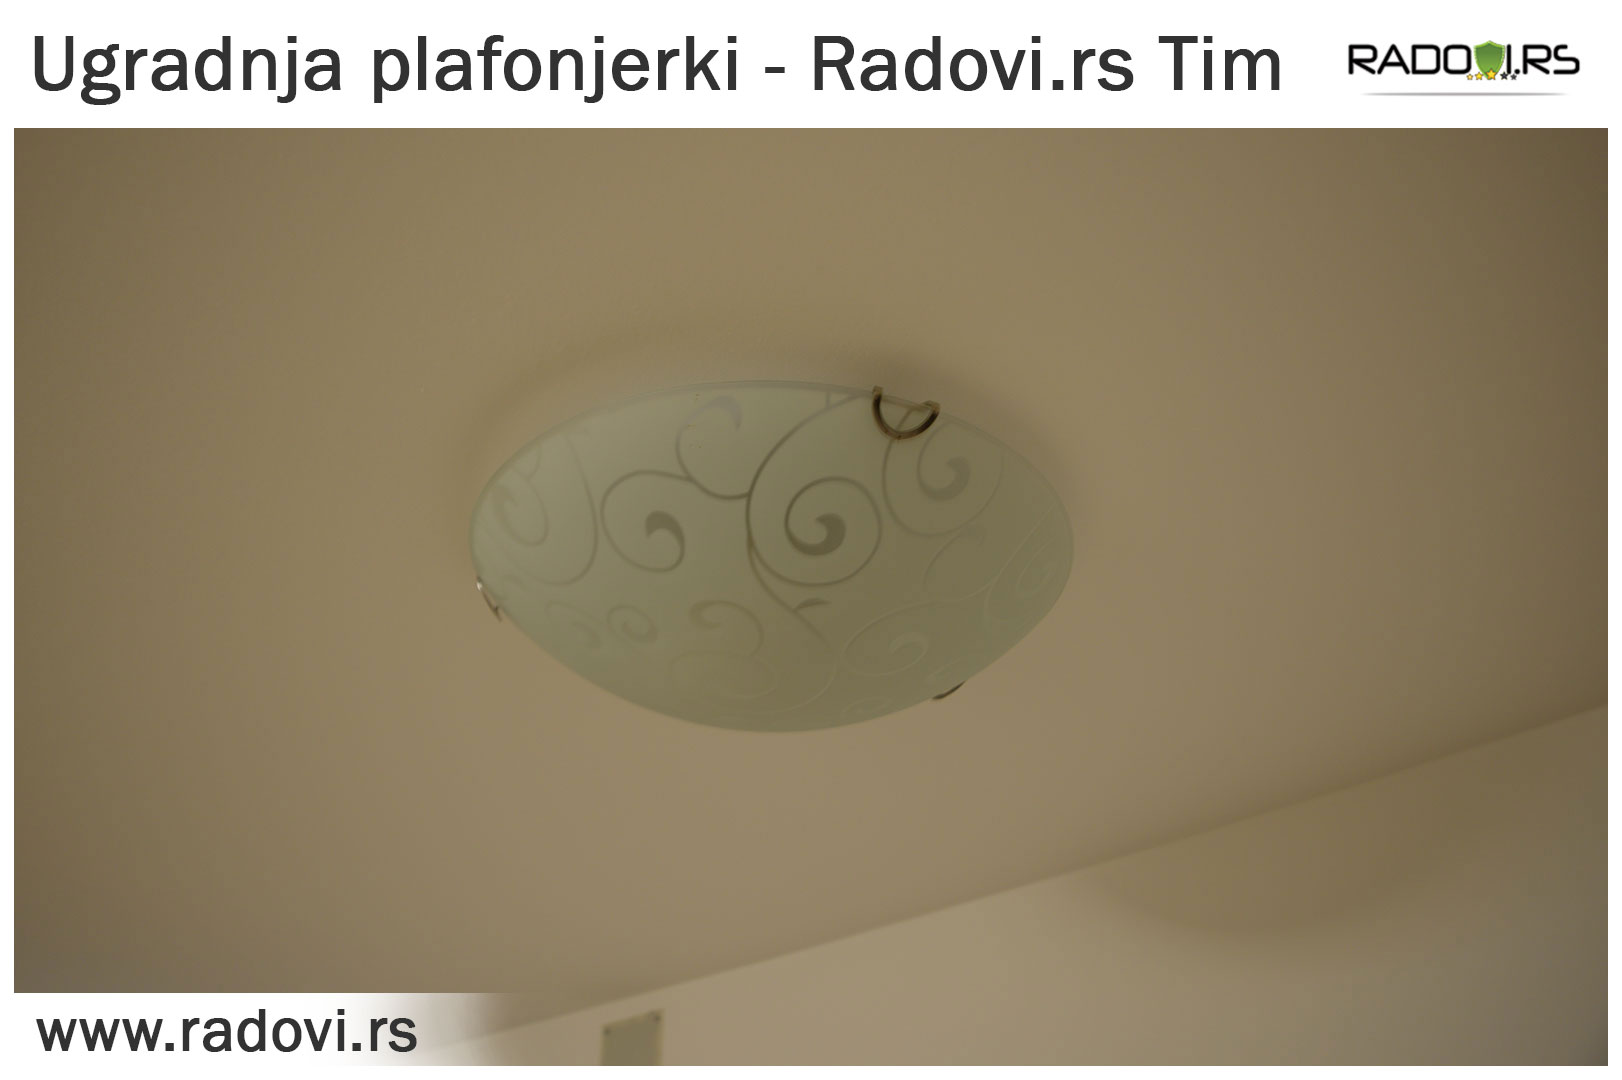 Ugradnja plafonjerki Beograd - Električar Beograd Tim - Radovi.rs